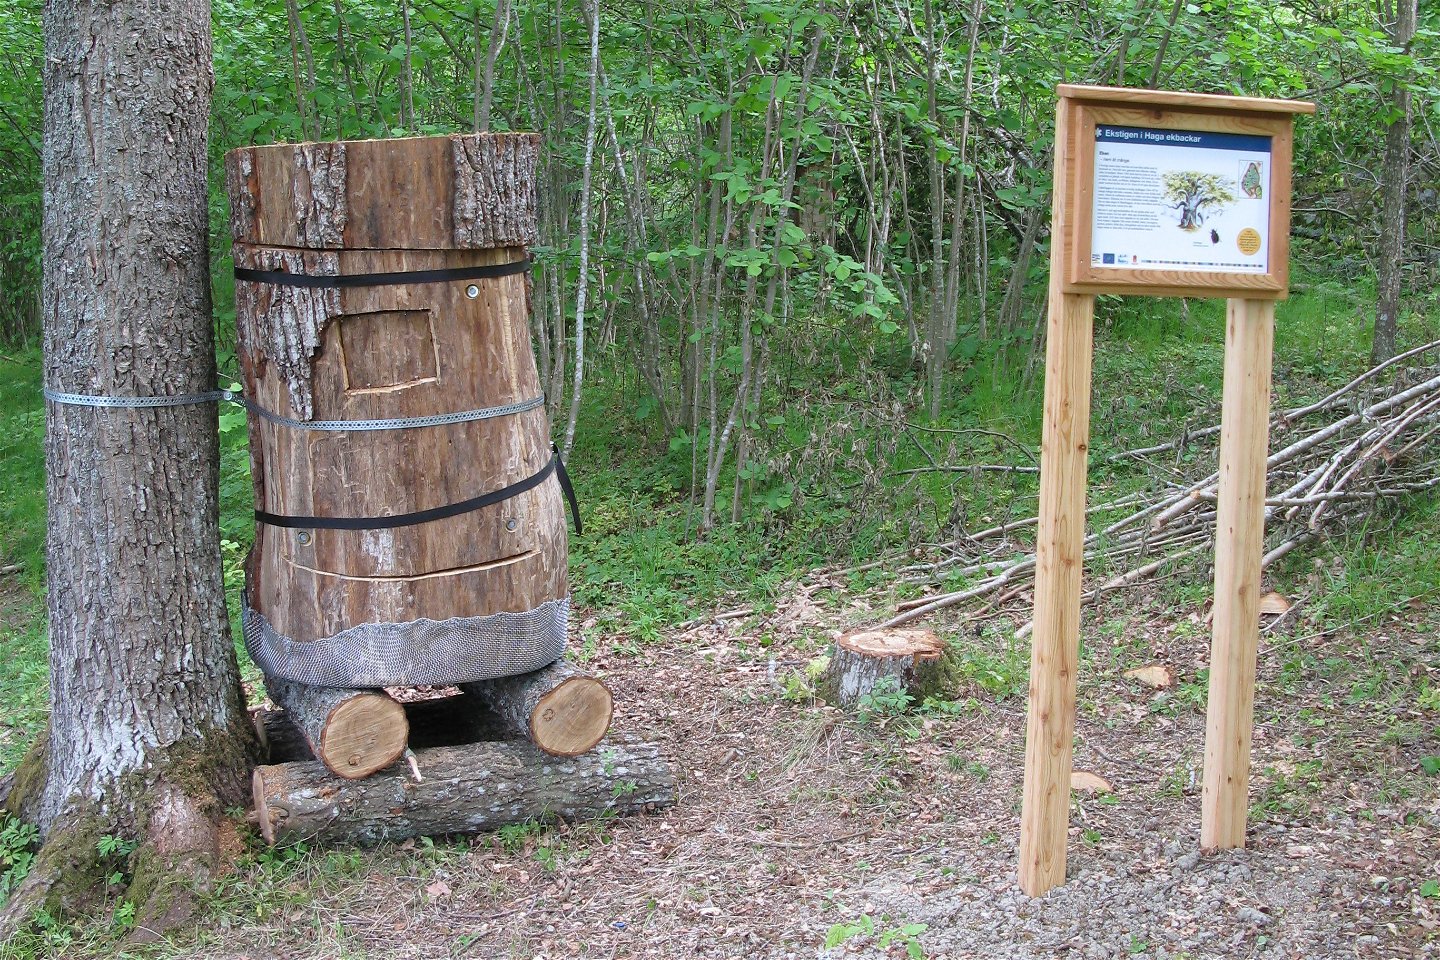 I skogen står en informationstavla och en slags stubbe av en gammal trädstam. Stubben är förankrad vid en trädstam bredvid.